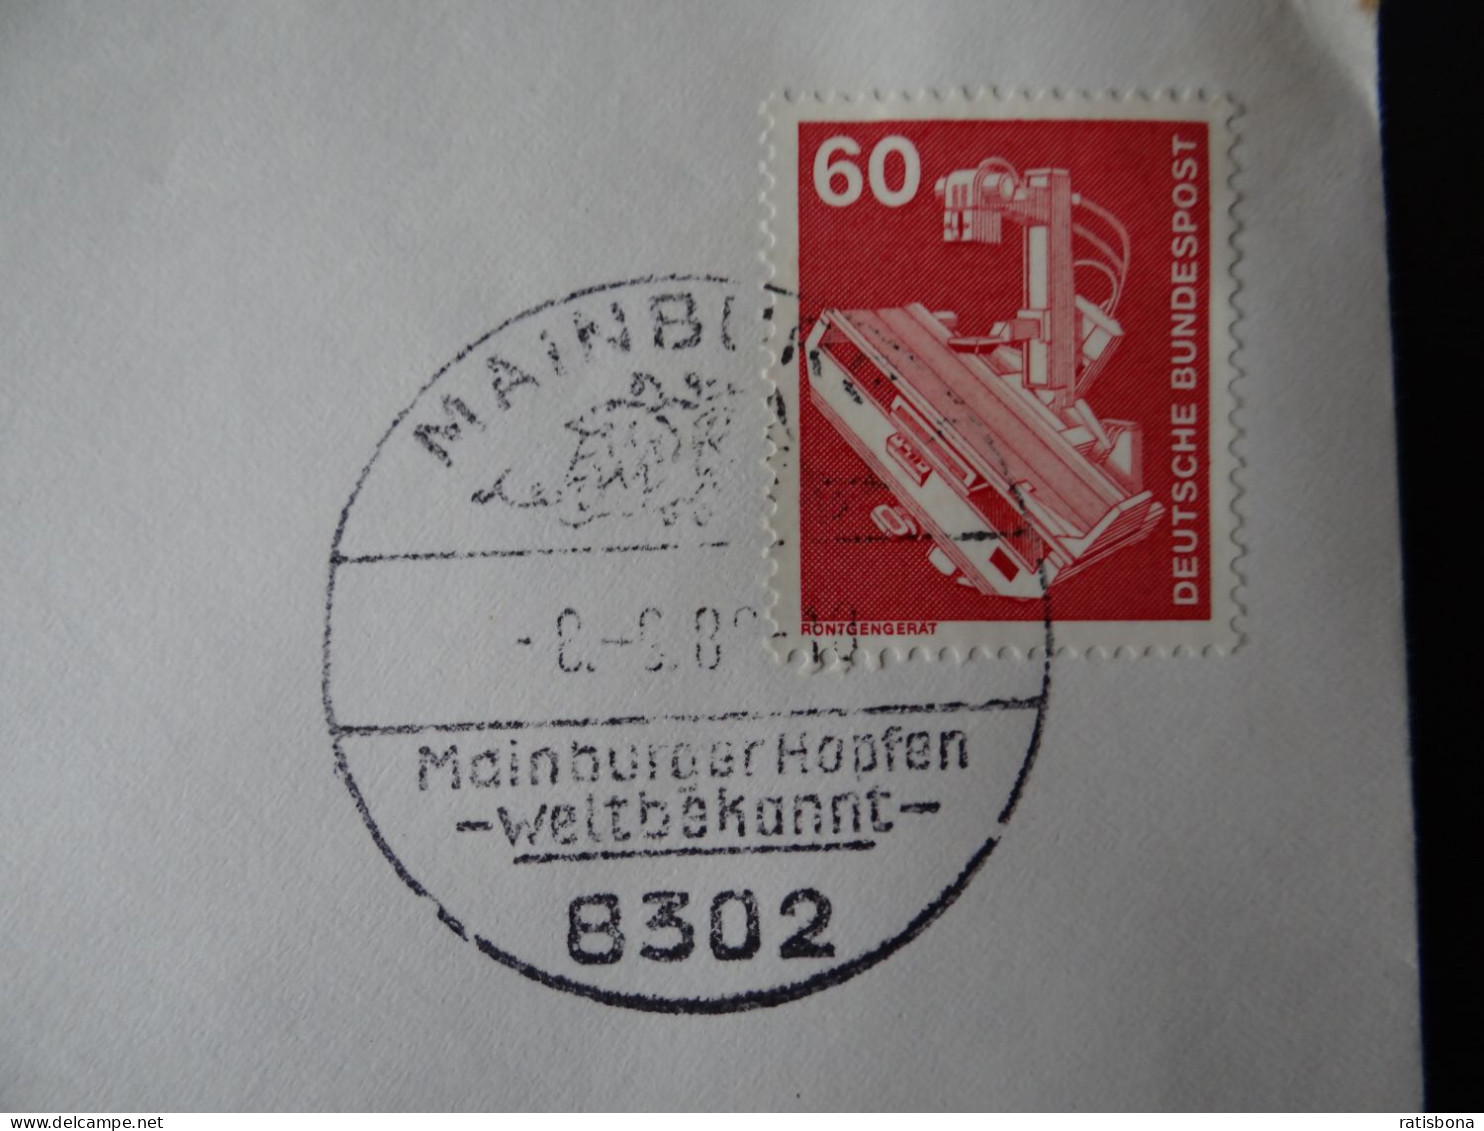 8302 Mainburg - MainburgerHopfen Weltbekannt - Sonderstempel Rund 1980 - Franking Machines (EMA)